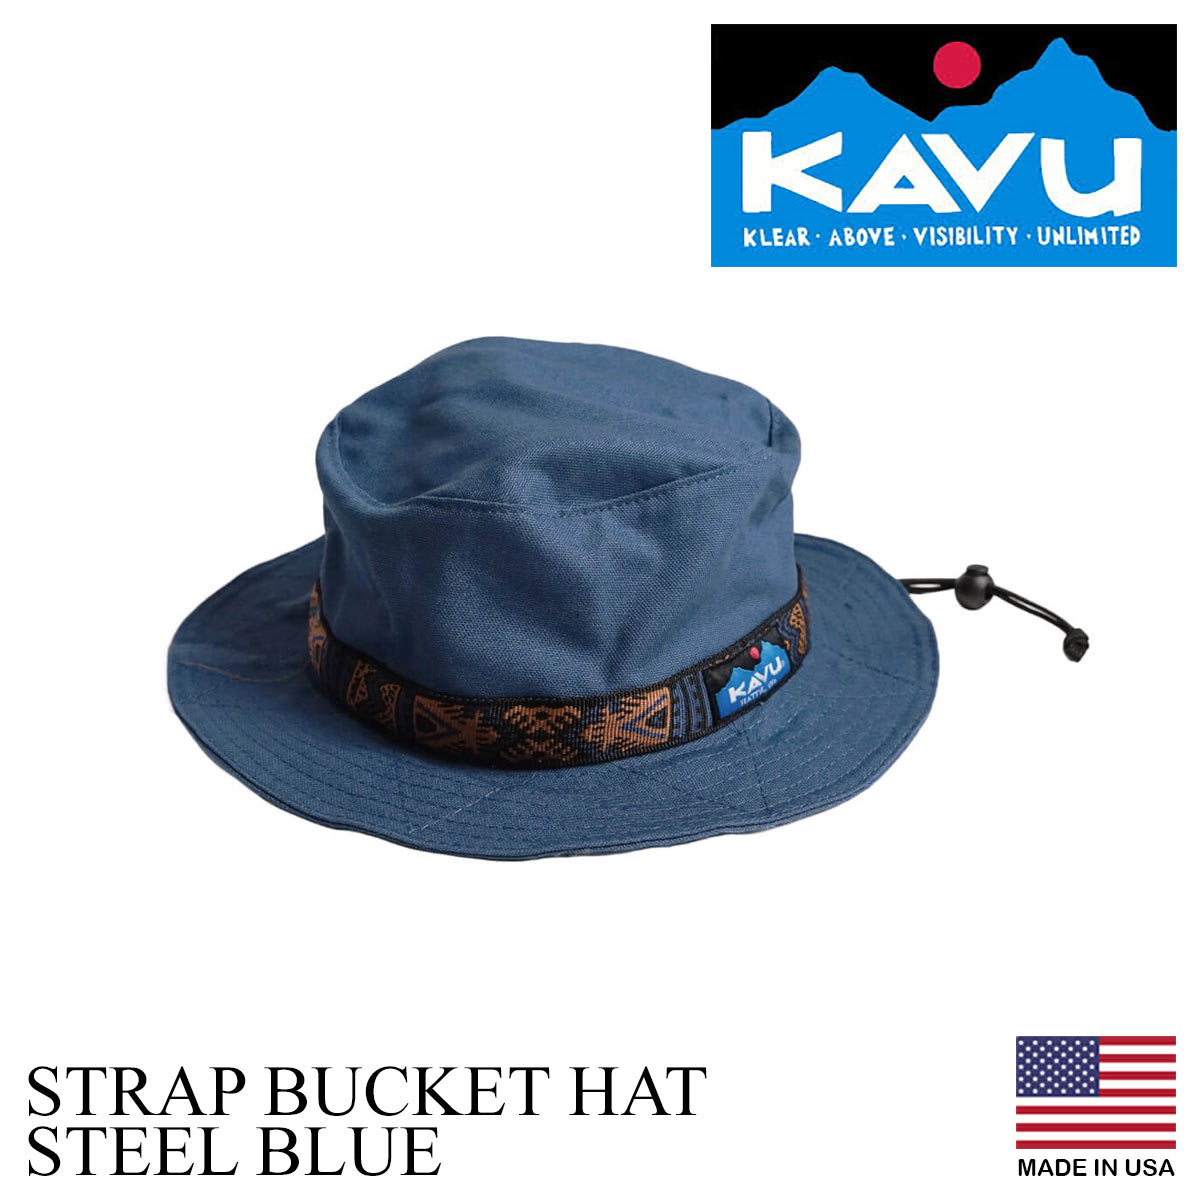 カブー KAVU ストラップ バケットハットアメリカ製 米国製 コットン キャンプ サファリ ハット ブーニー 帽子